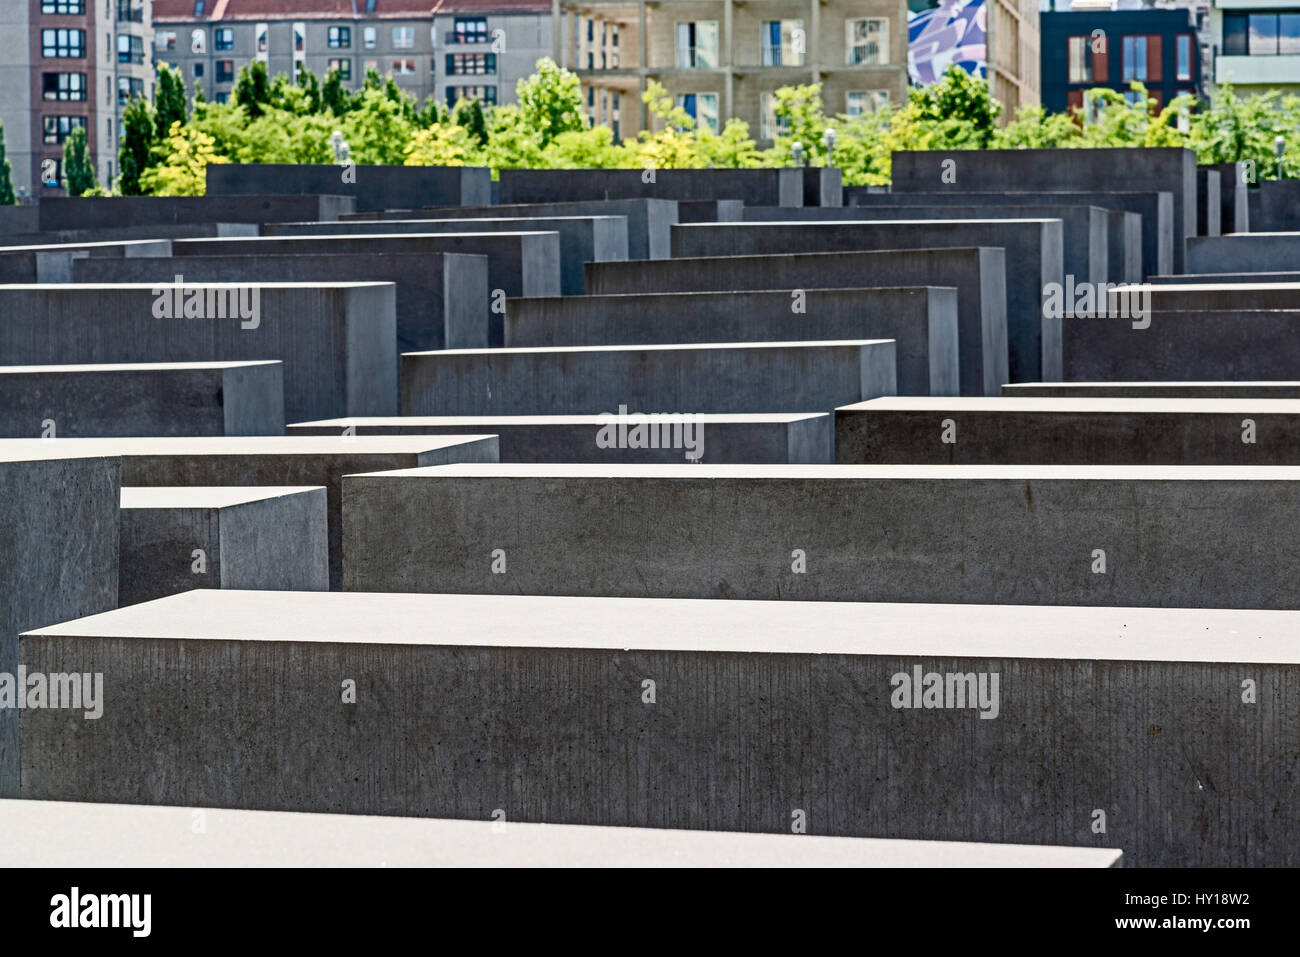 Berlino, Holocast Memorial; Berlino, Gedenkstaette für die ermordeten Juden Foto Stock